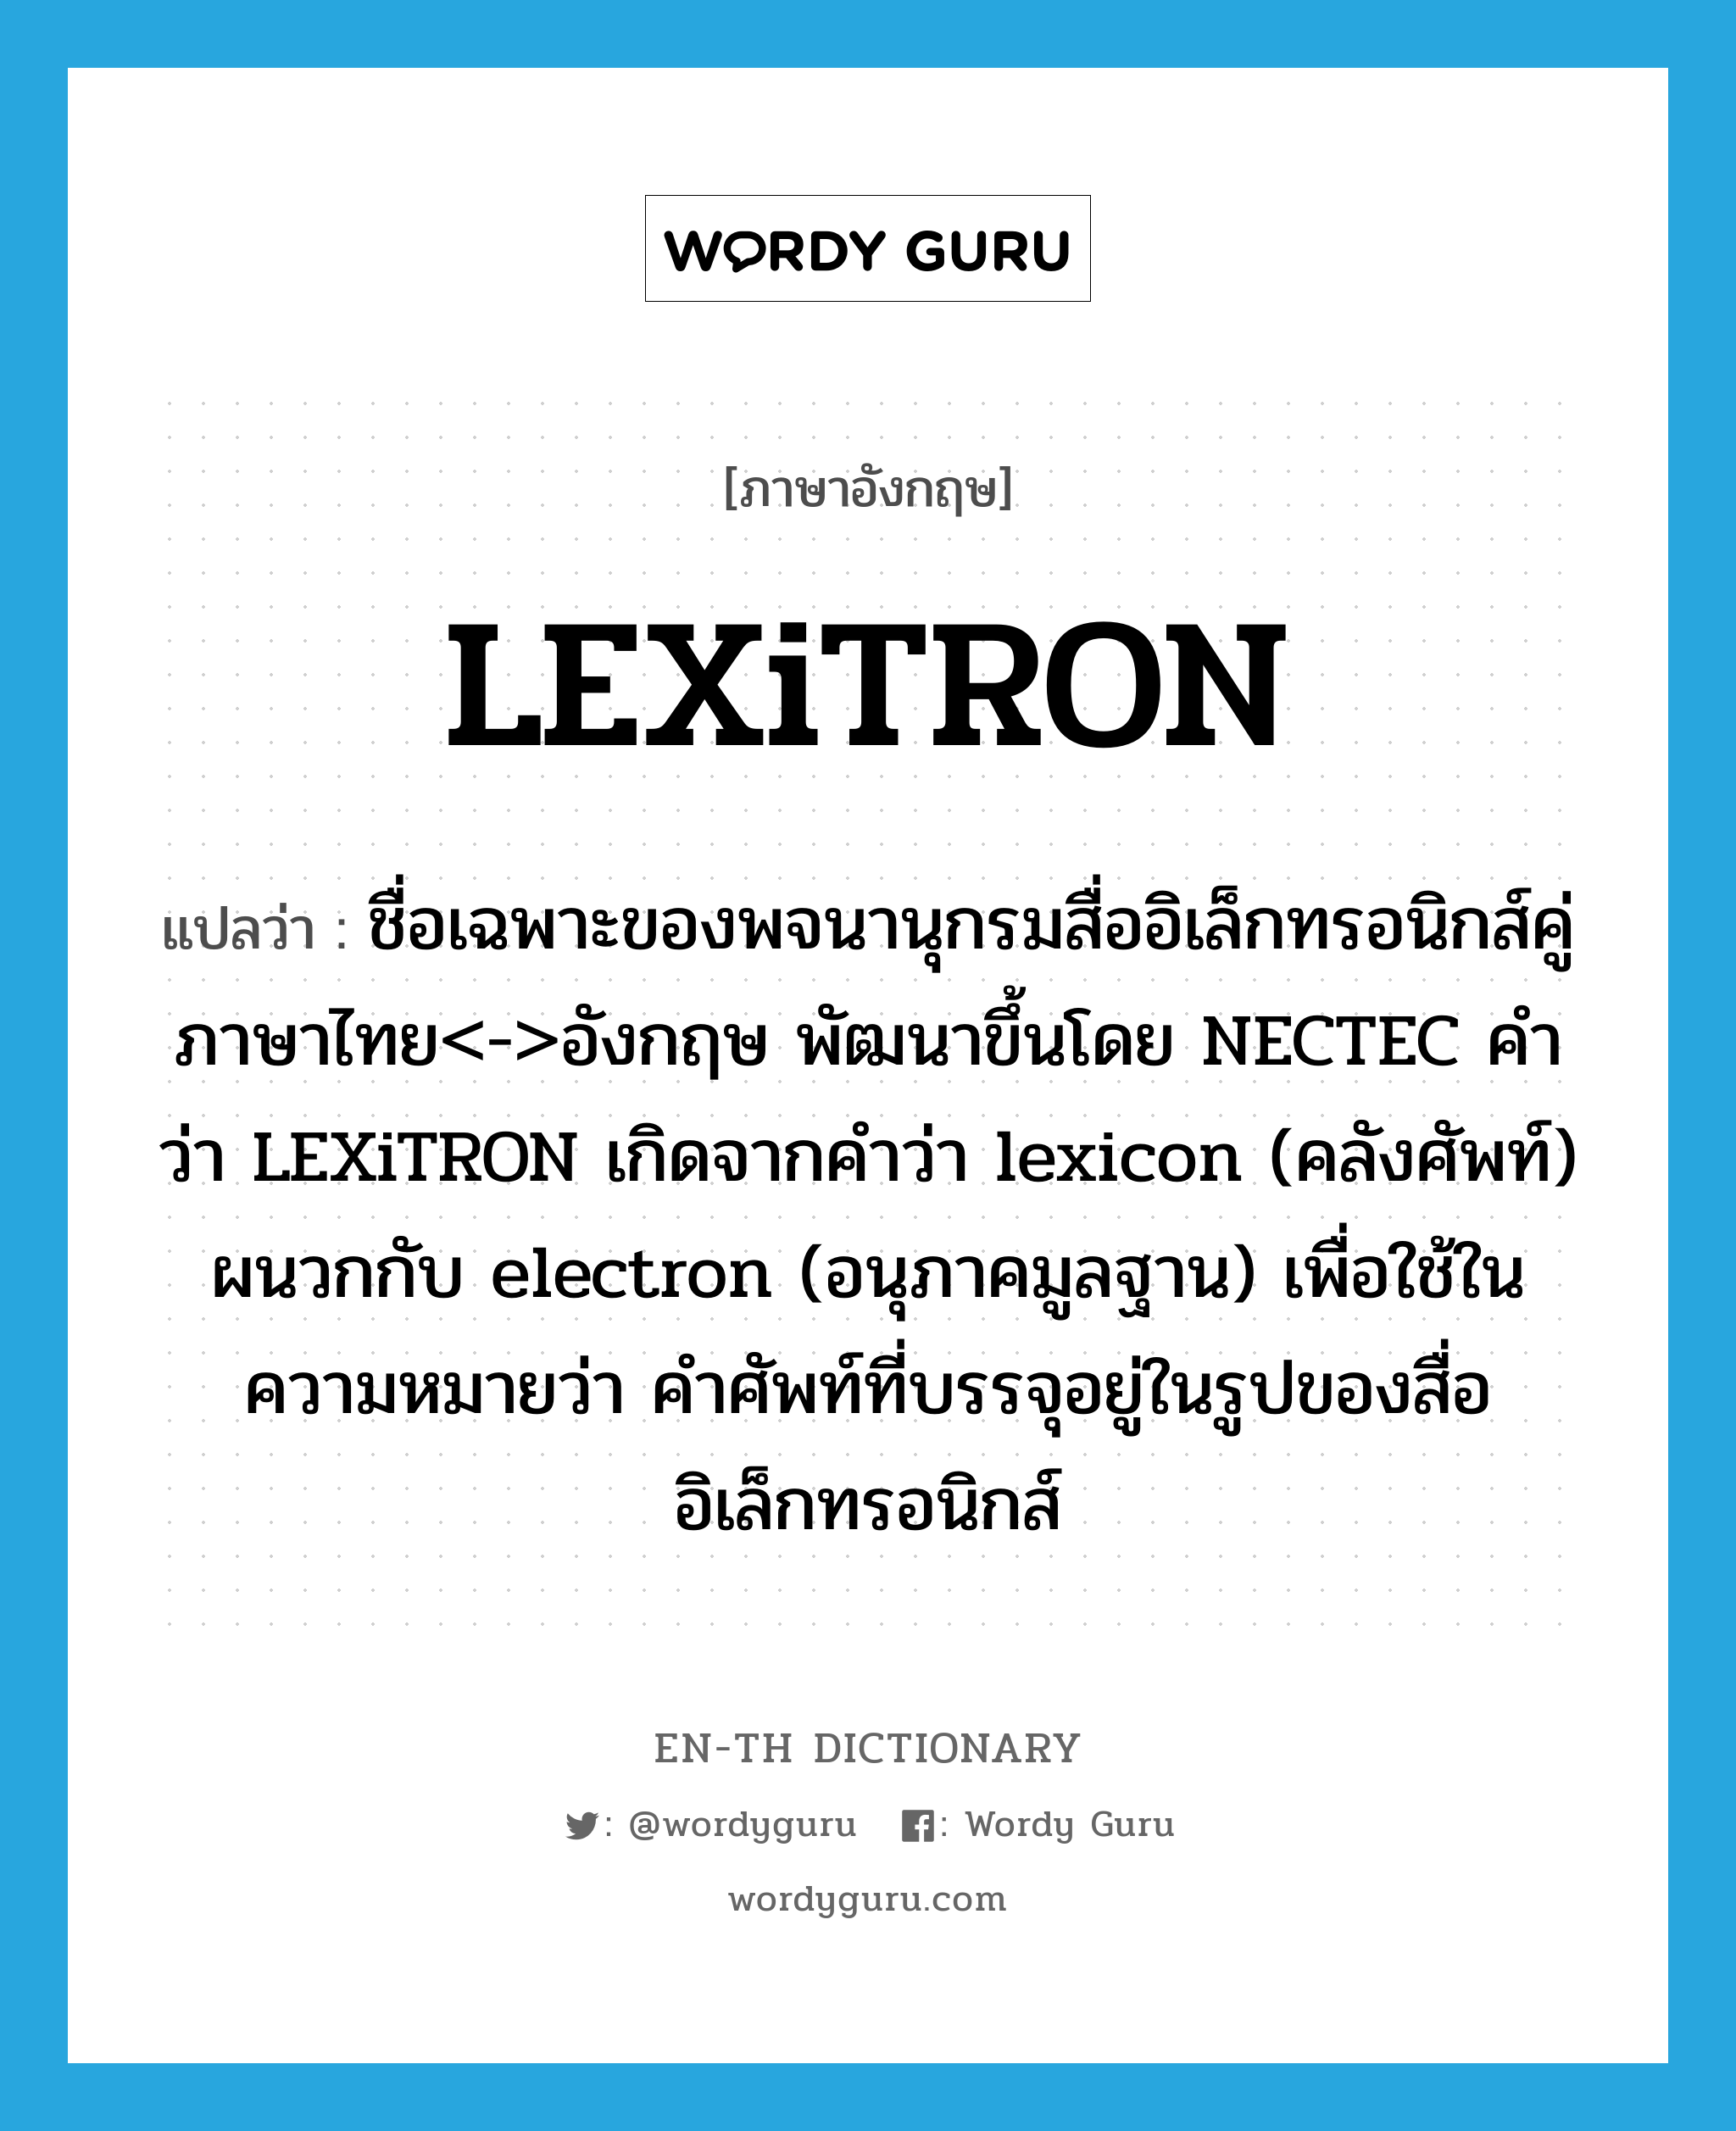 ชื่อเฉพาะของพจนานุกรมสื่ออิเล็กทรอนิกส์คู่ภาษาไทย<->อังกฤษ พัฒนาขึ้นโดย NECTEC คำว่า LEXiTRON เกิดจากคำว่า lexicon (คลังศัพท์) ผนวกกับ electron (อนุภาคมูลฐาน) เพื่อใช้ในความหมายว่า คำศัพท์ที่บรรจุอยู่ในรูปของสื่ออิเล็กทรอนิกส์ ภาษาอังกฤษ?, คำศัพท์ภาษาอังกฤษ ชื่อเฉพาะของพจนานุกรมสื่ออิเล็กทรอนิกส์คู่ภาษาไทย<->อังกฤษ พัฒนาขึ้นโดย NECTEC คำว่า LEXiTRON เกิดจากคำว่า lexicon (คลังศัพท์) ผนวกกับ electron (อนุภาคมูลฐาน) เพื่อใช้ในความหมายว่า คำศัพท์ที่บรรจุอยู่ในรูปของสื่ออิเล็กทรอนิกส์ แปลว่า LEXiTRON ประเภท N หมวด N